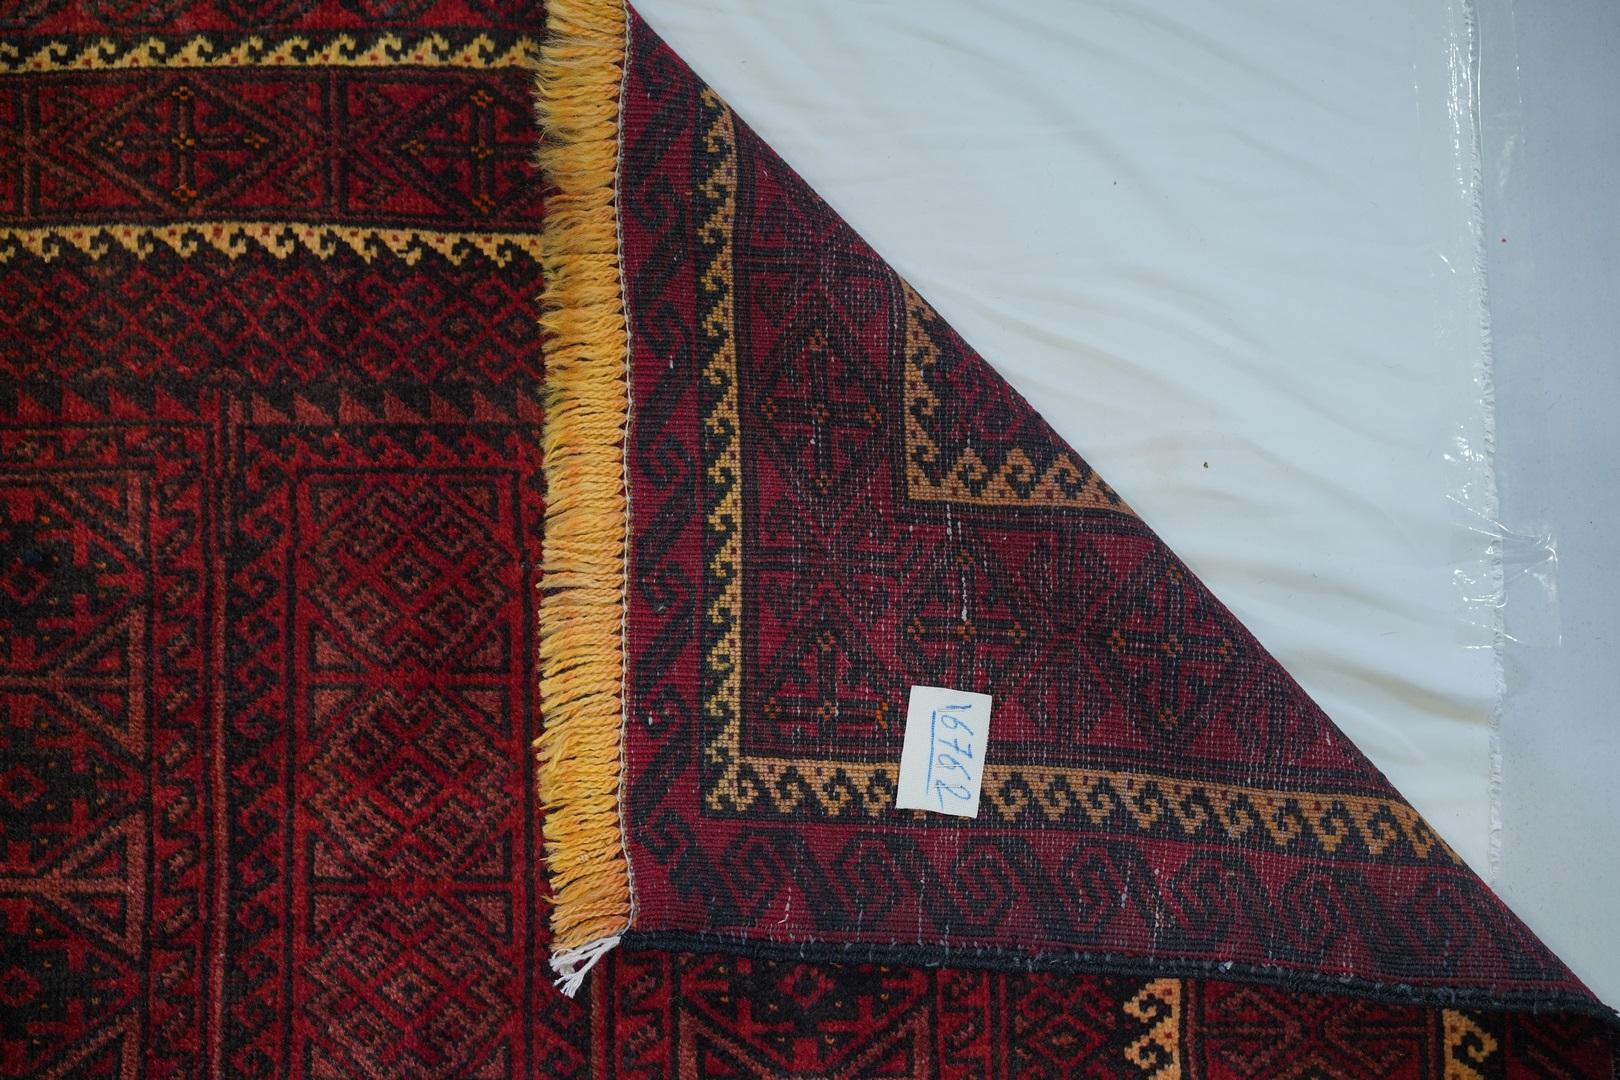 Bluch, Kamelwolle
In weicher Lammwolle ein dicht gewebtes, ausdrucksstarkes Beispiel für handgefertigte Belutschi-Stammesweberei aus der Mitte des Jahrhunderts, die jetzt ein Revival erlebt, da Sammler ältere Stücke von sehr seltener Qualität auf